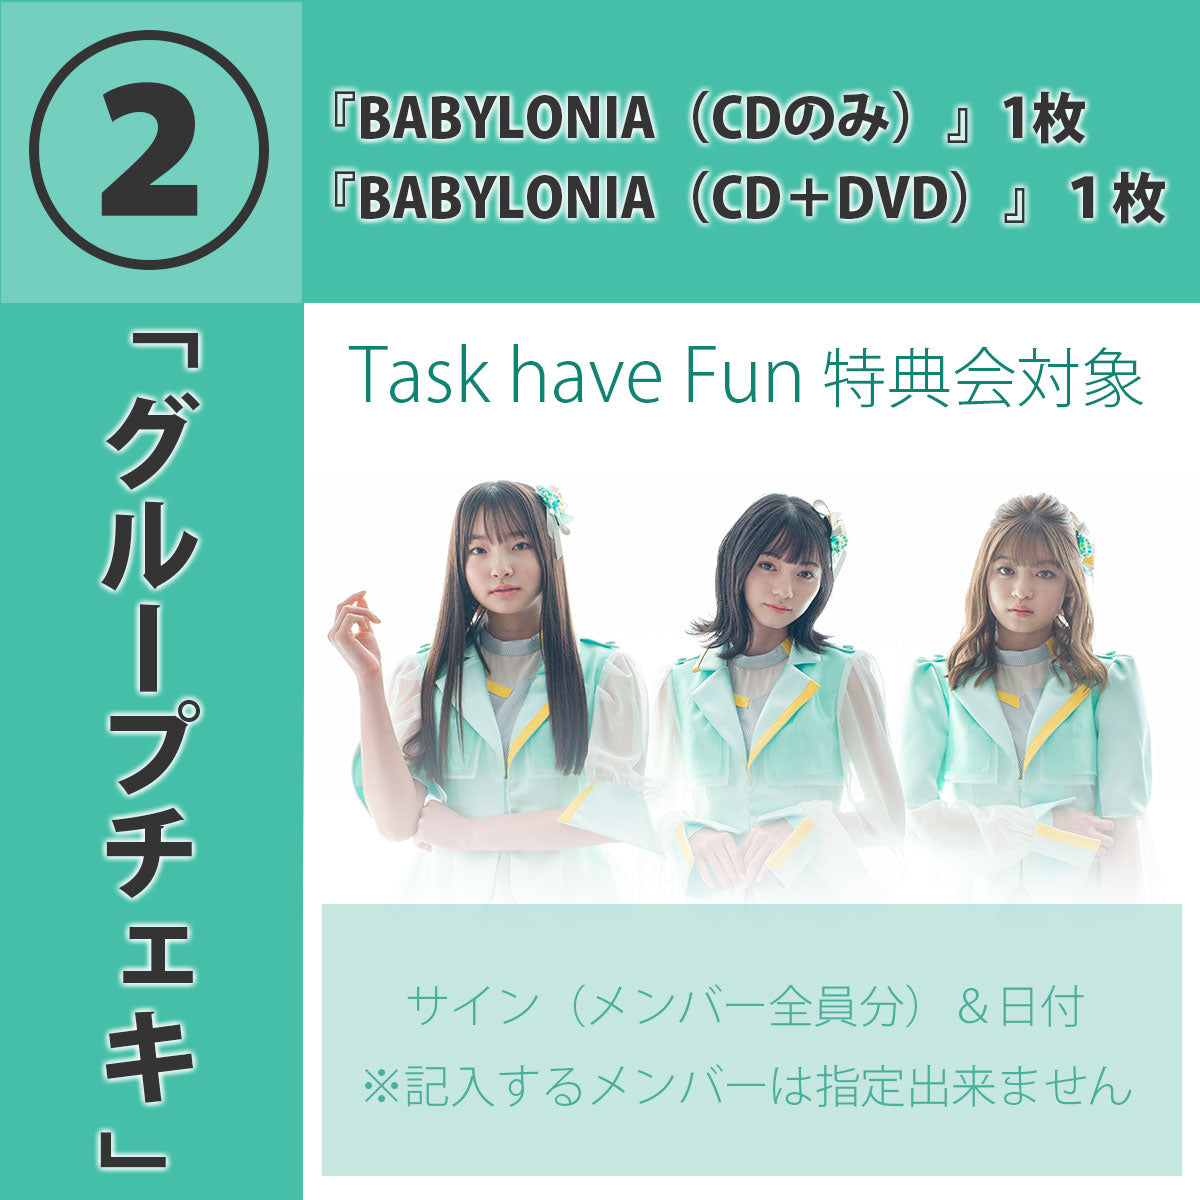 【特典会対象商品】4/1 (木) (2)グループチェキTask have Fun ONLINE LIVE&TALK&特典会